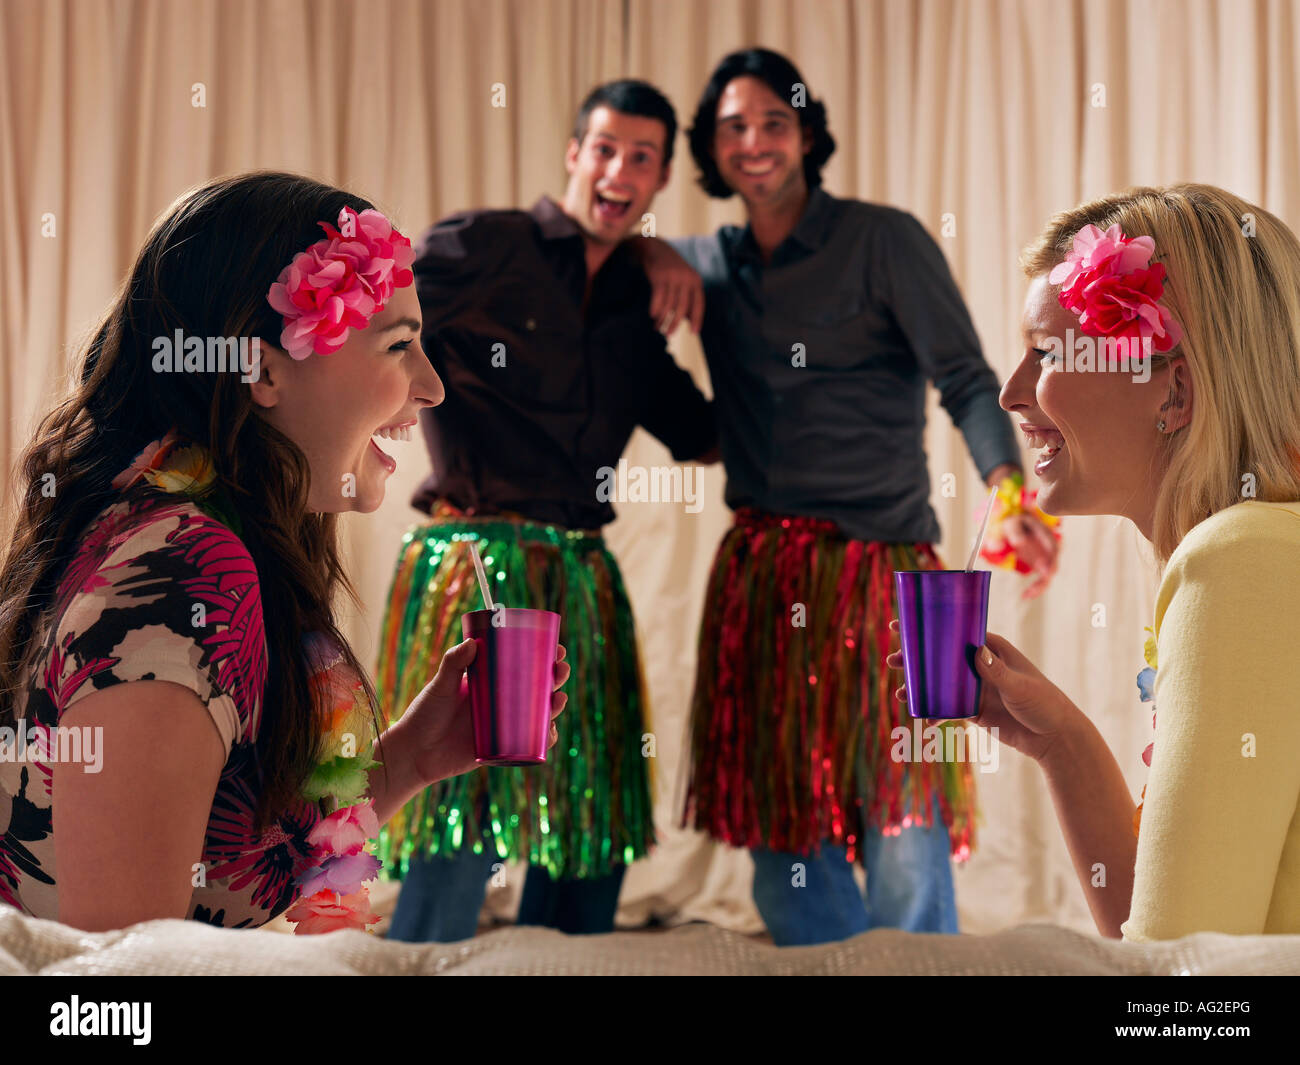 Deux couples à dressing up party Banque D'Images